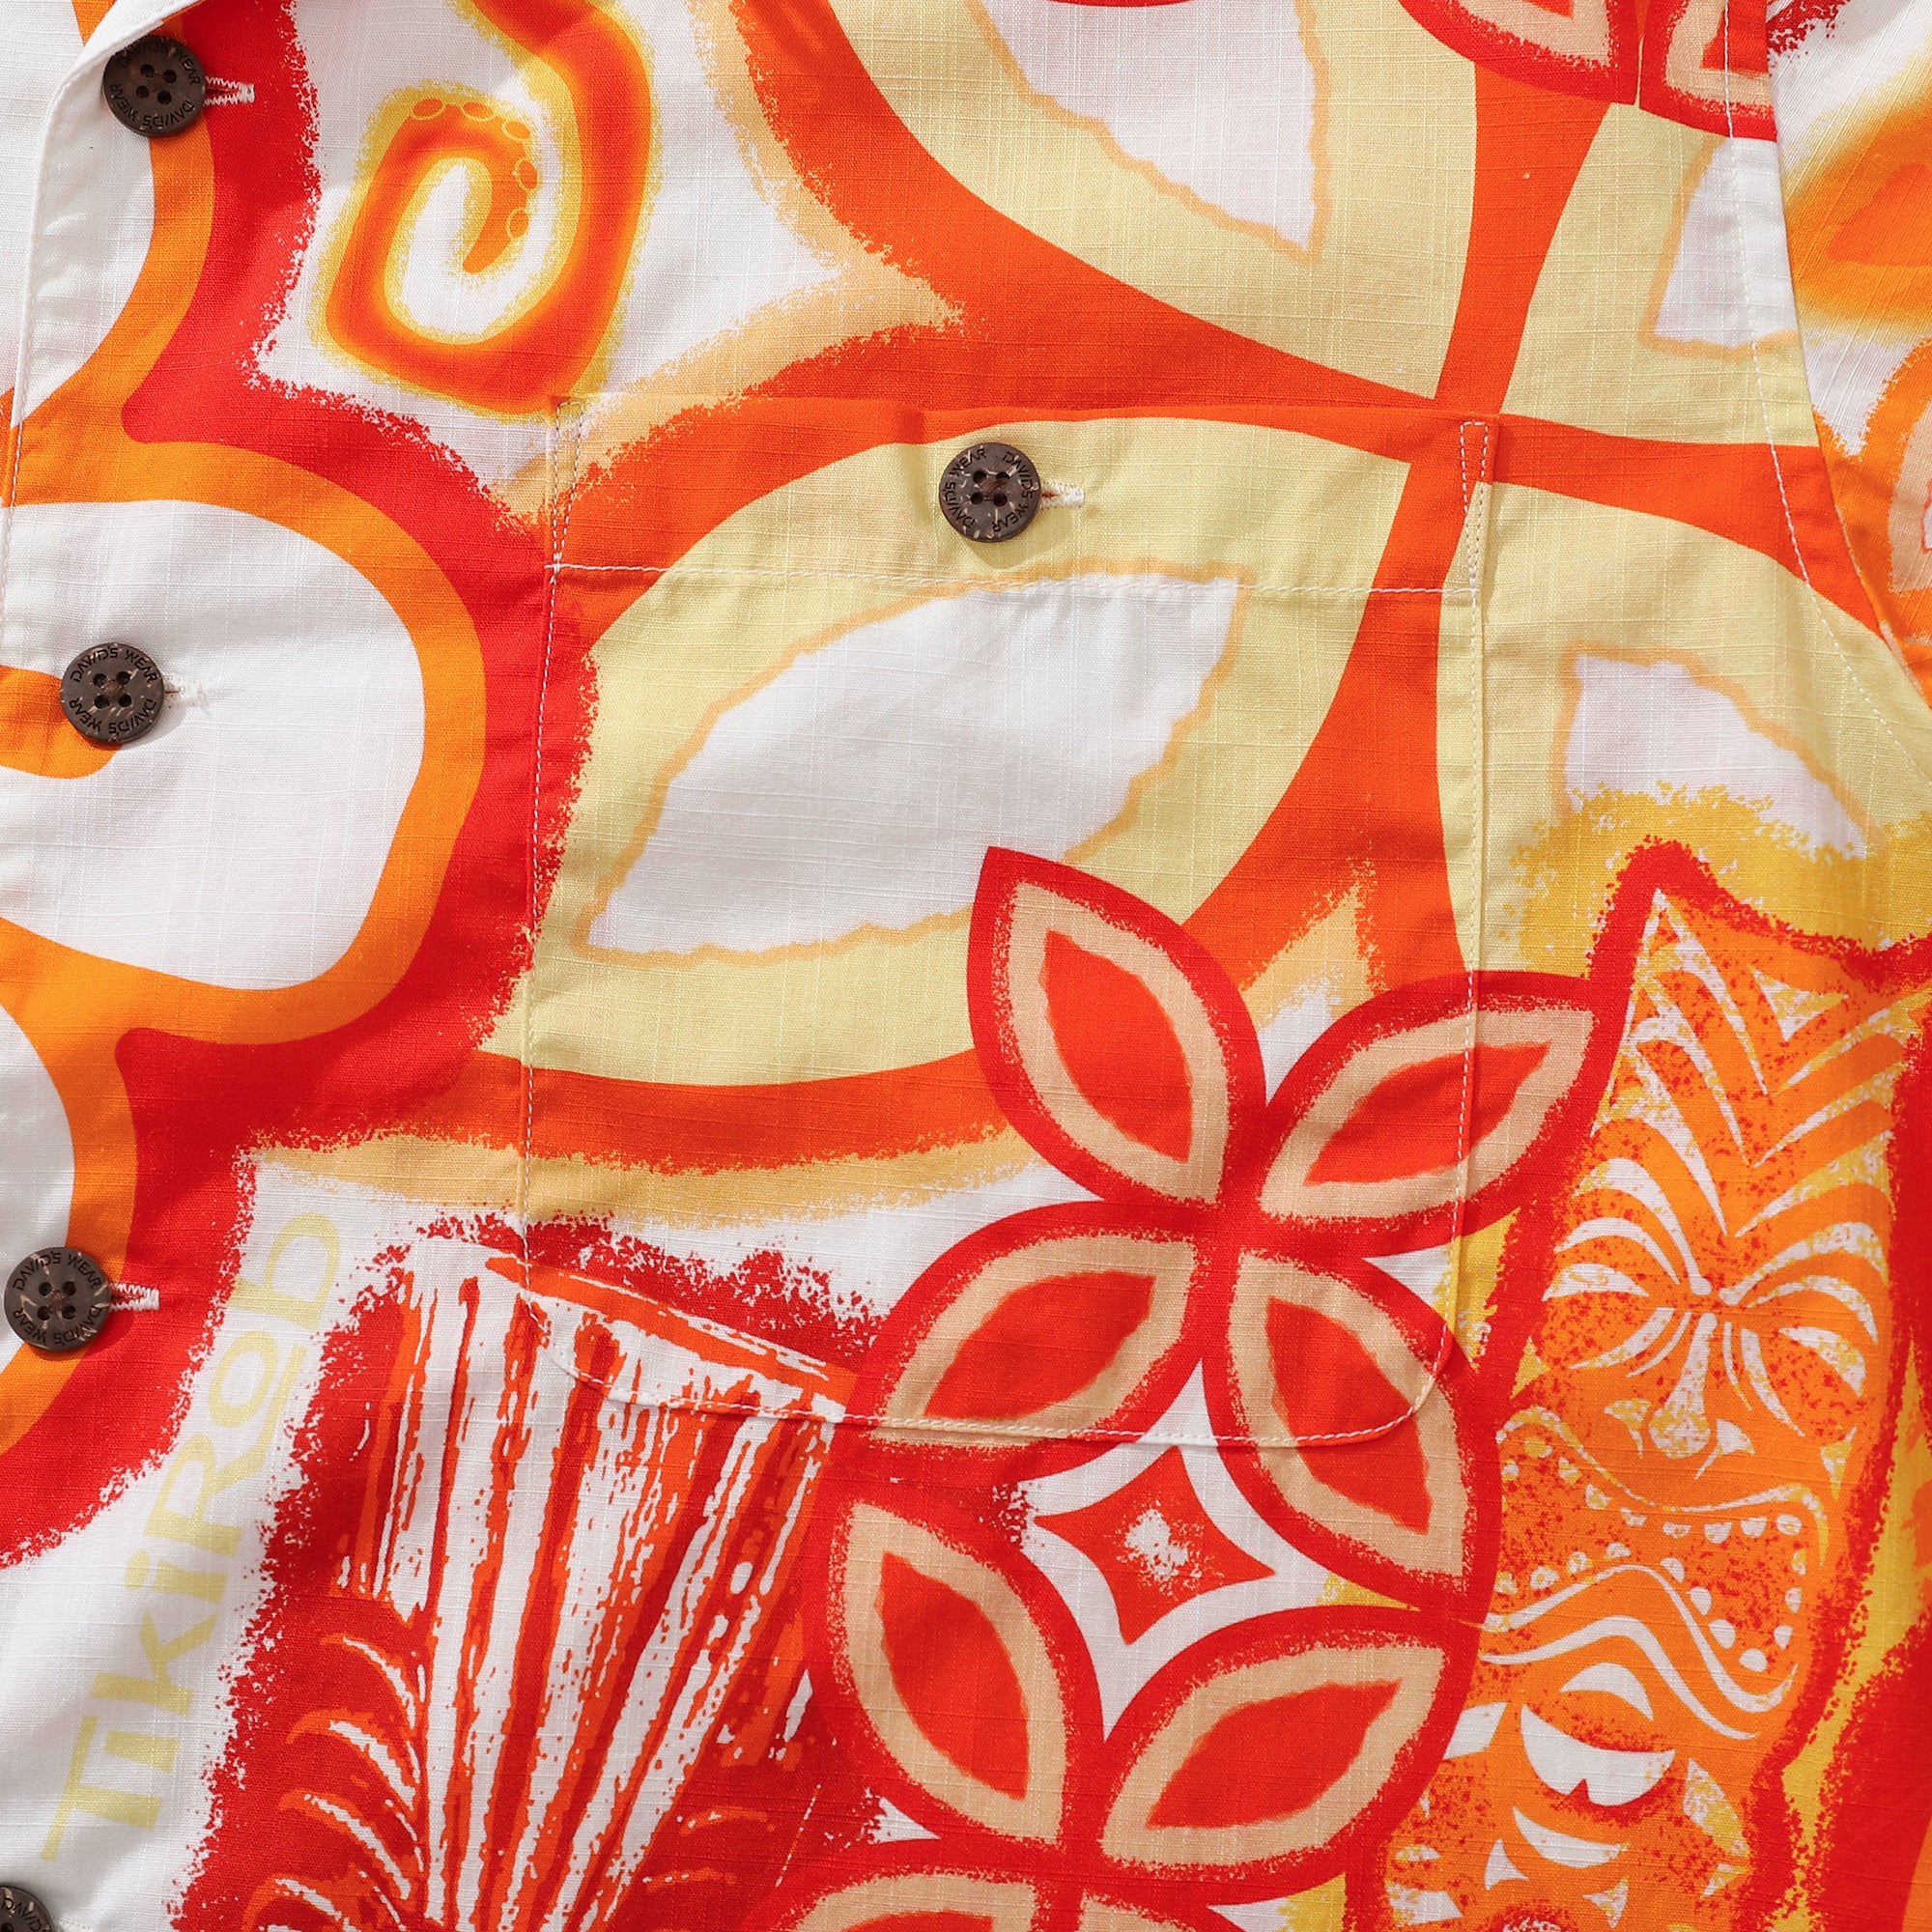 Hawaiihemden für Herren Tikirob Designerhemd Orange Totem 100 % Baumwolle